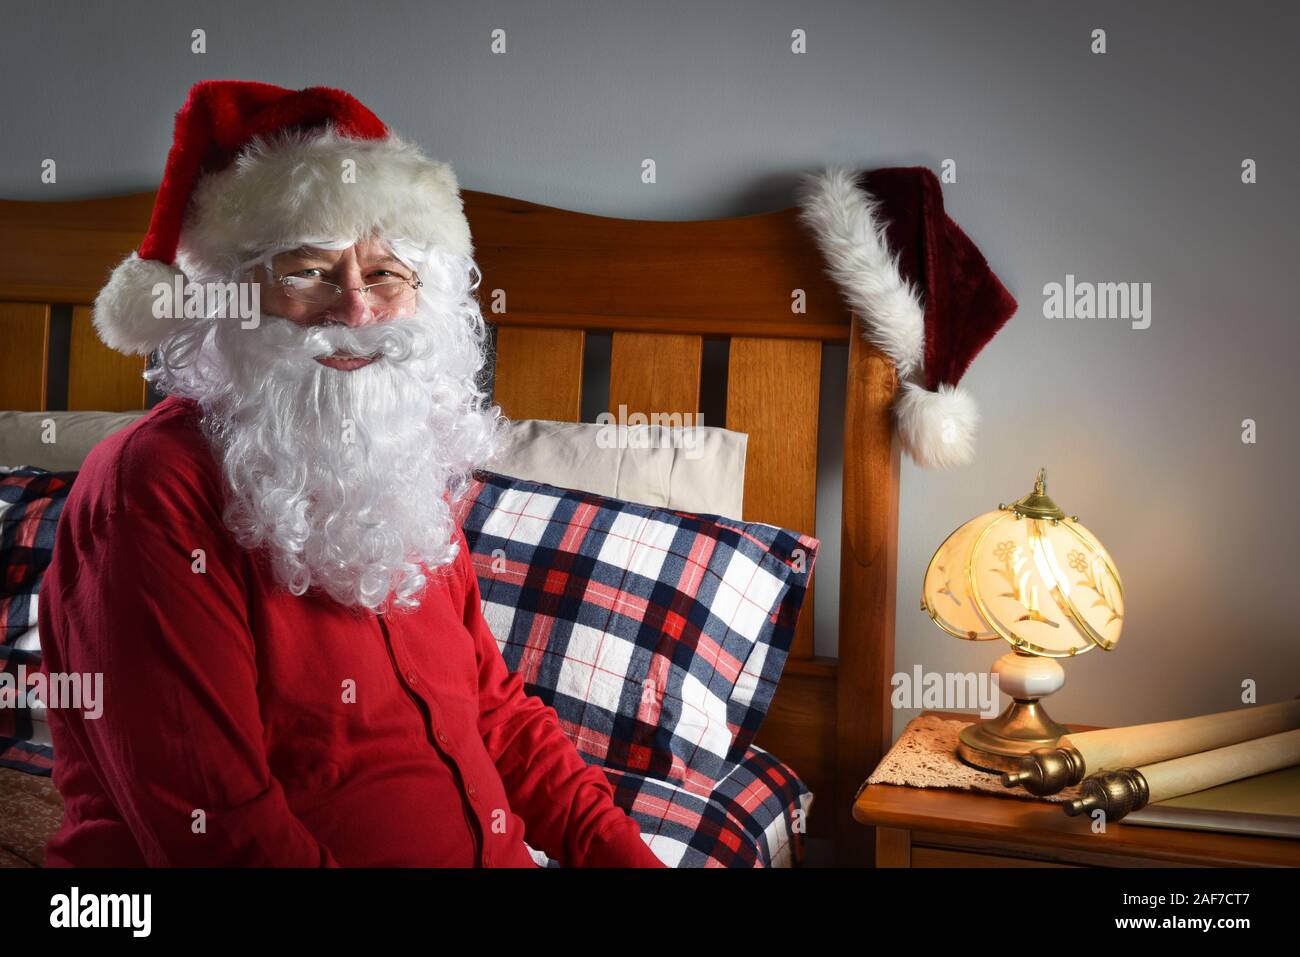 Gros plan du Père Noël portant un costume de l'Union européenne assise sur le bord de son lit au Pôle Nord, prêt à aller dormir après la livraison de colis sur Ch Banque D'Images